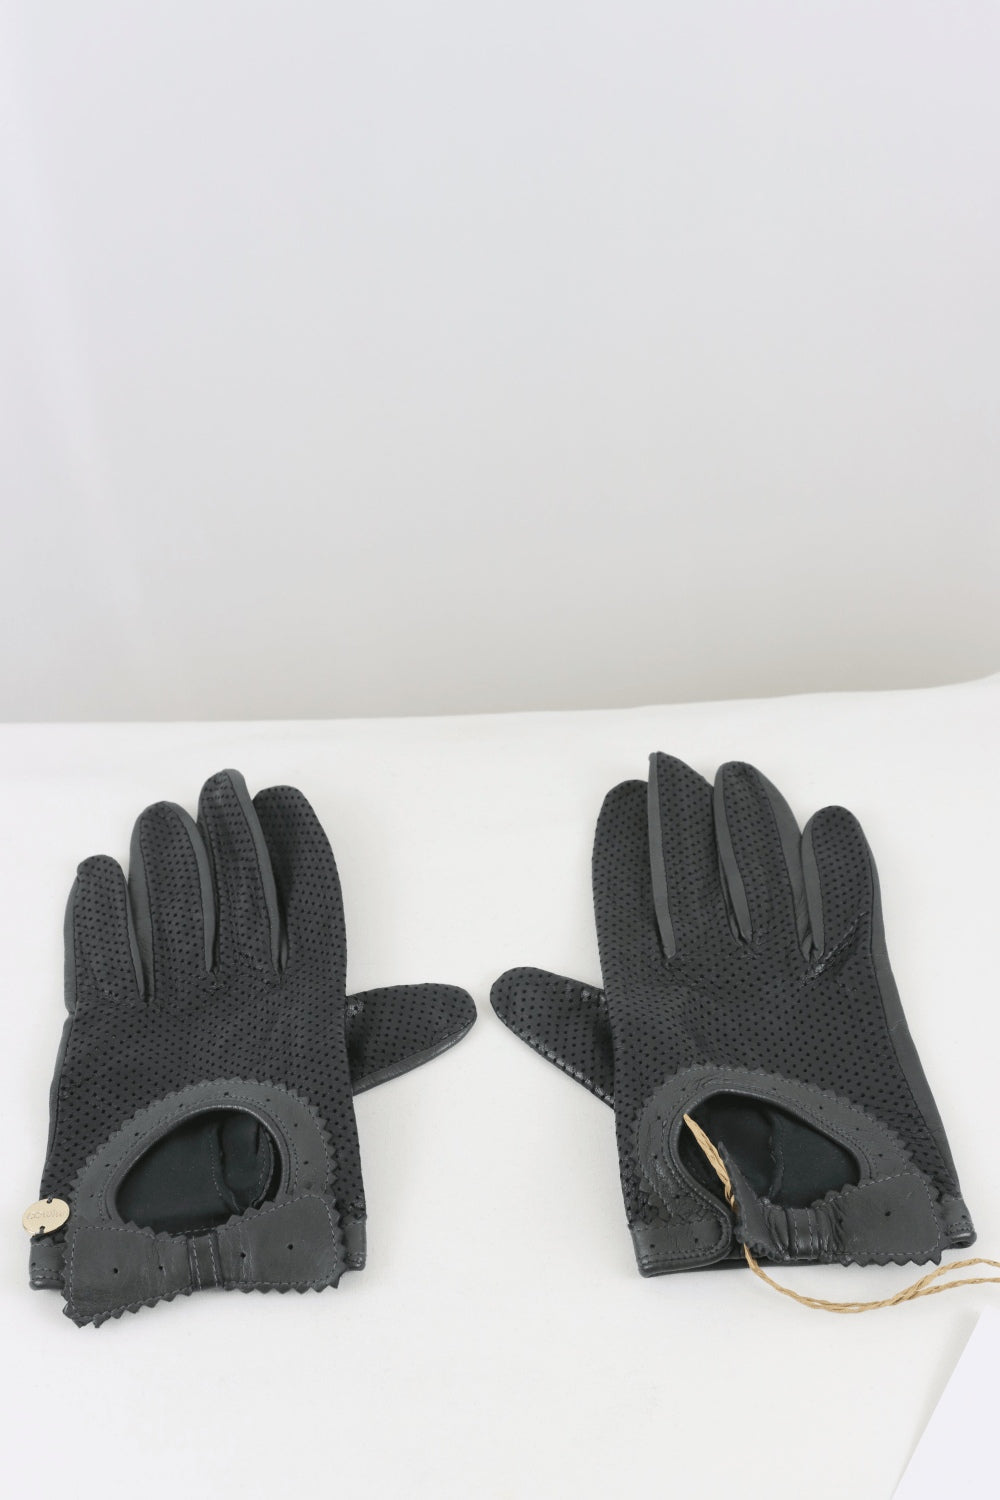 Mimco Gloves Black Gloves